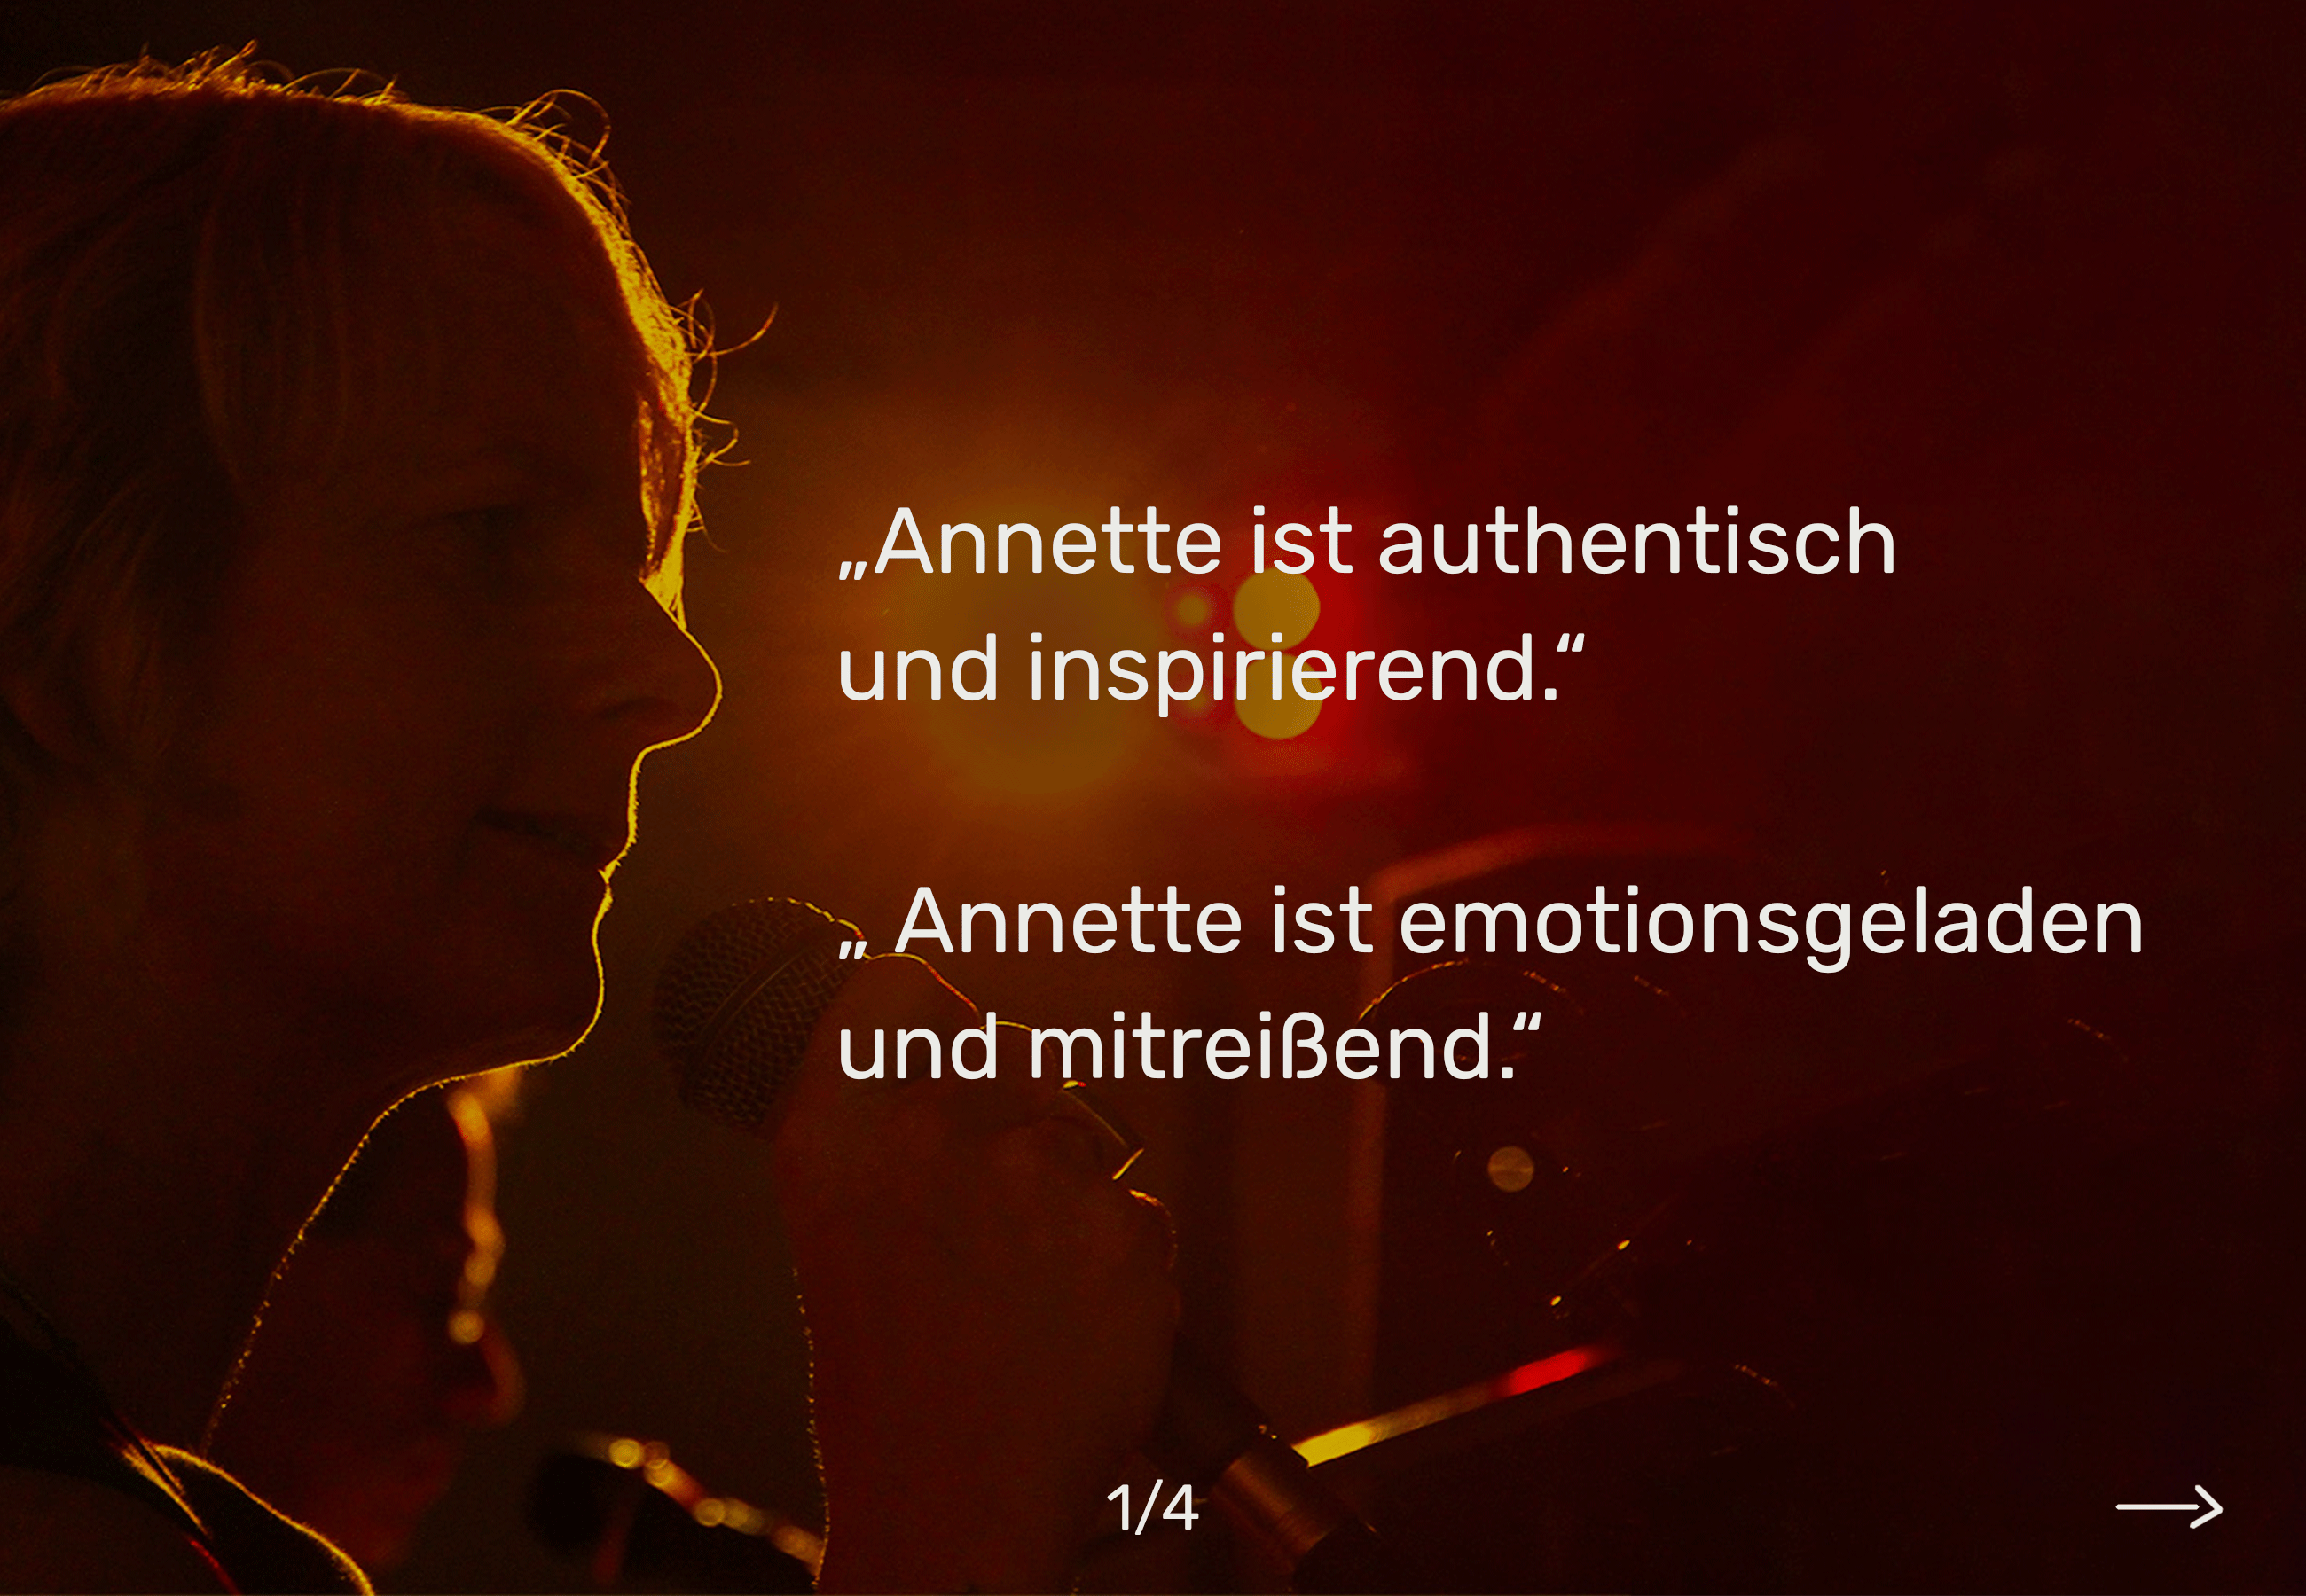 Annette Korn live Musik:
Annette's Publikum gibt seine Stimmen über Annettes Musik ab.